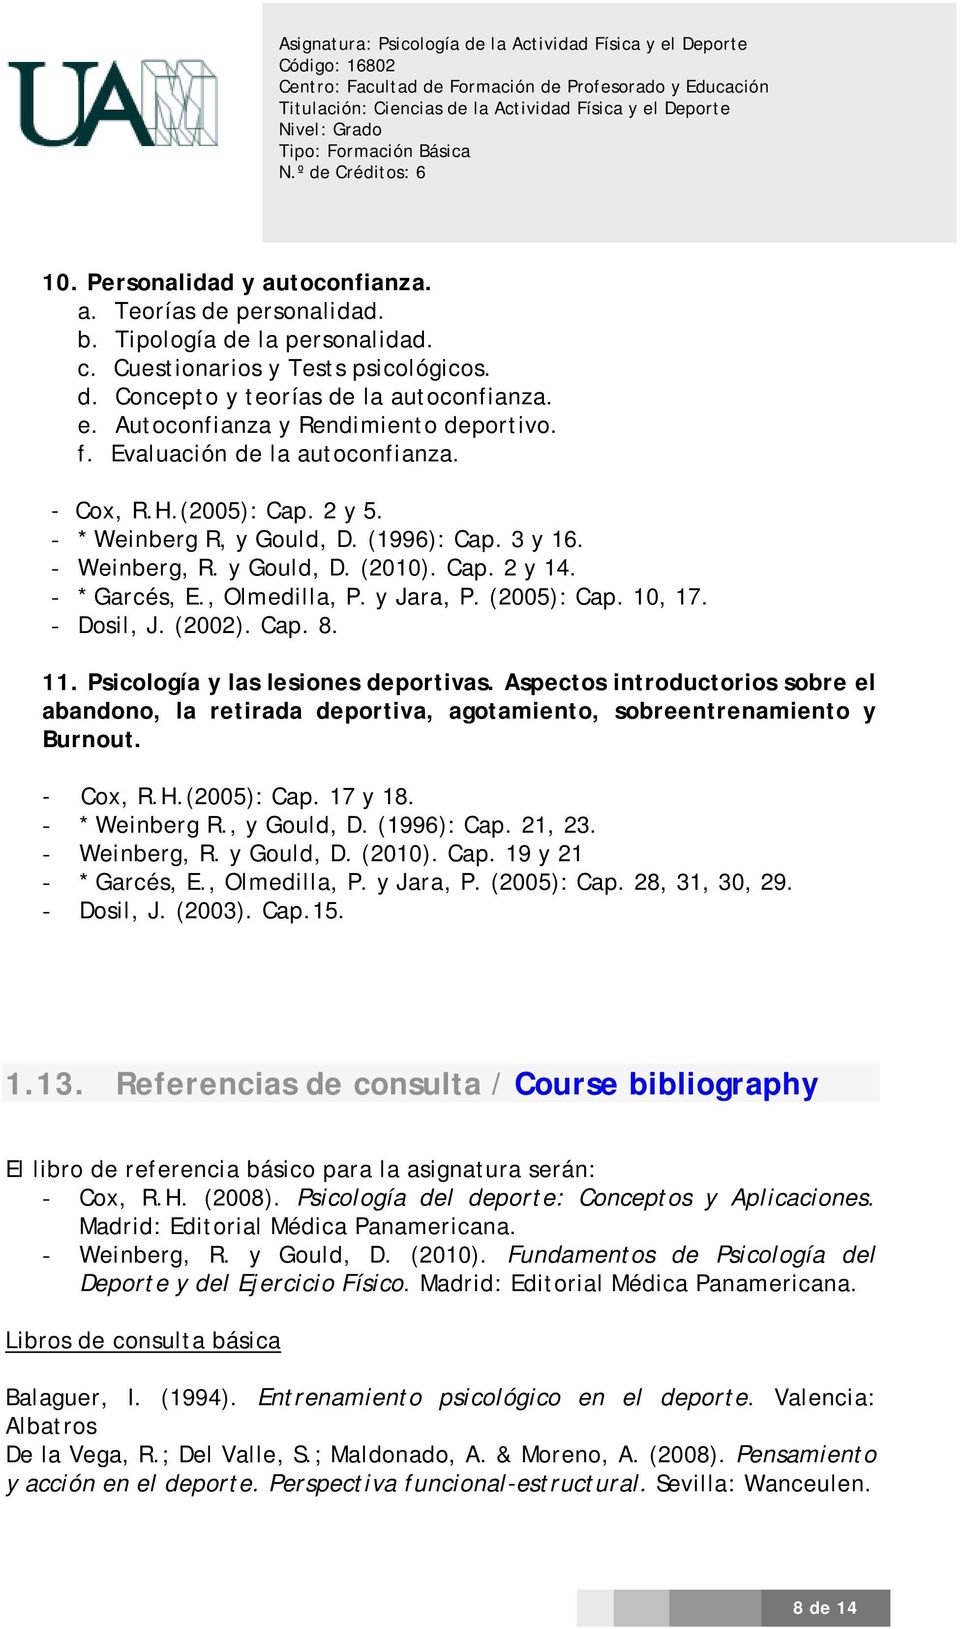 - * Garcés, E., Olmedilla, P. y Jara, P. (2005): Cap. 10, 17. - Dosil, J. (2002). Cap. 8. 11. Psicología y las lesiones deportivas.